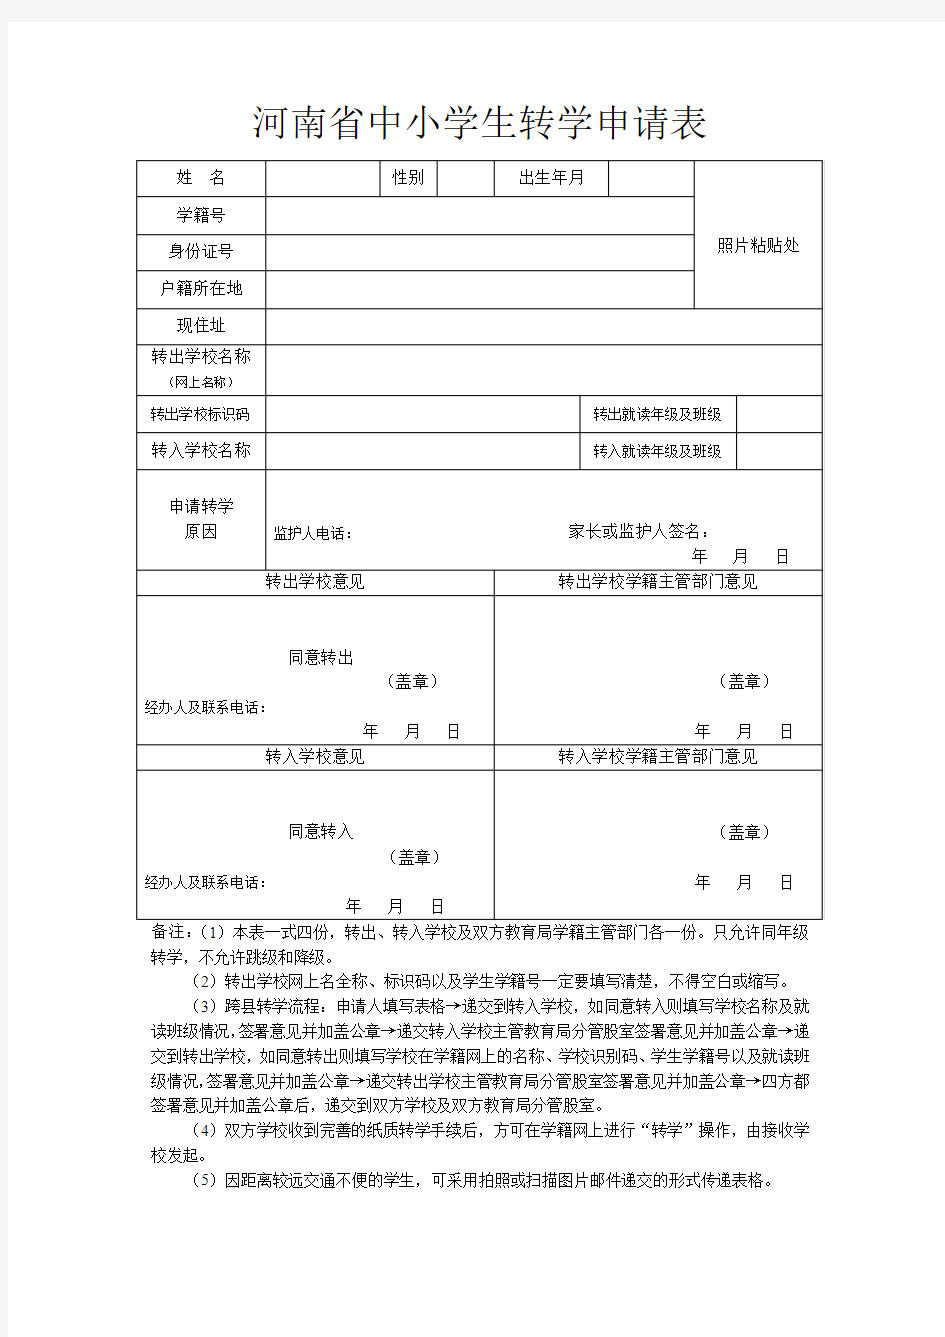 河南省中小学生转学申请表(2017)